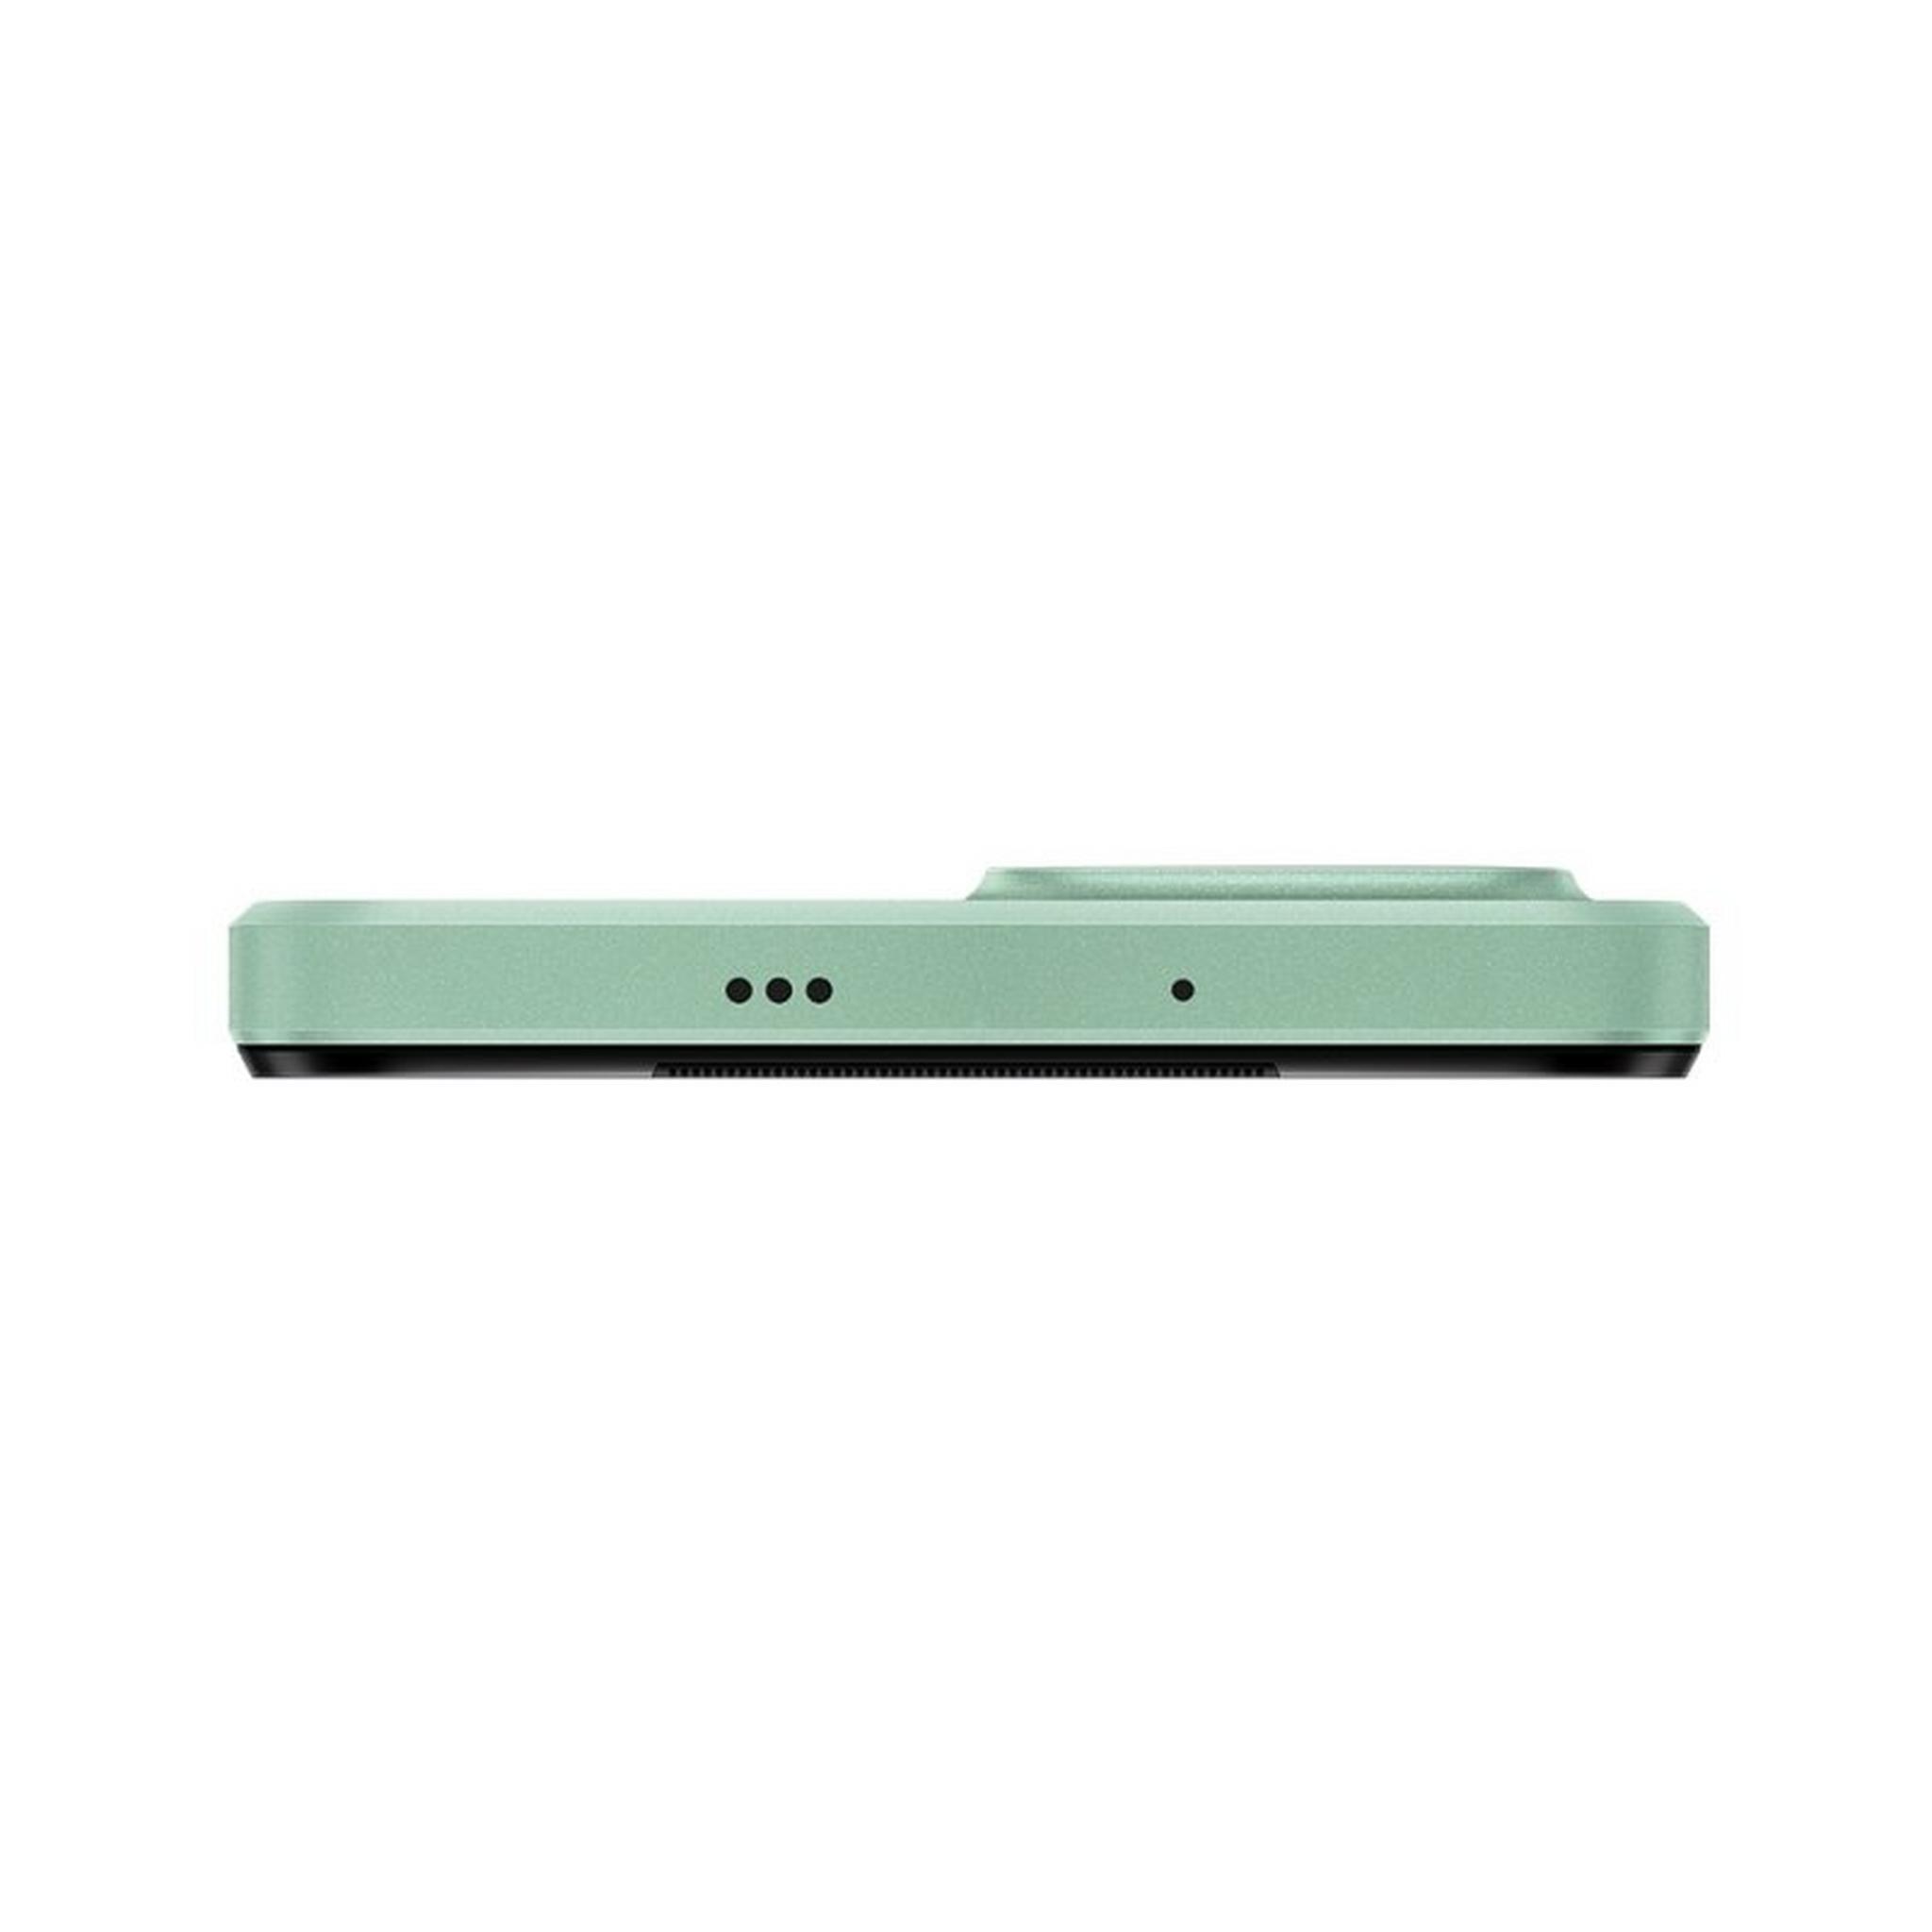 Huawei Nova Y61 64GB Phone - Mint Green